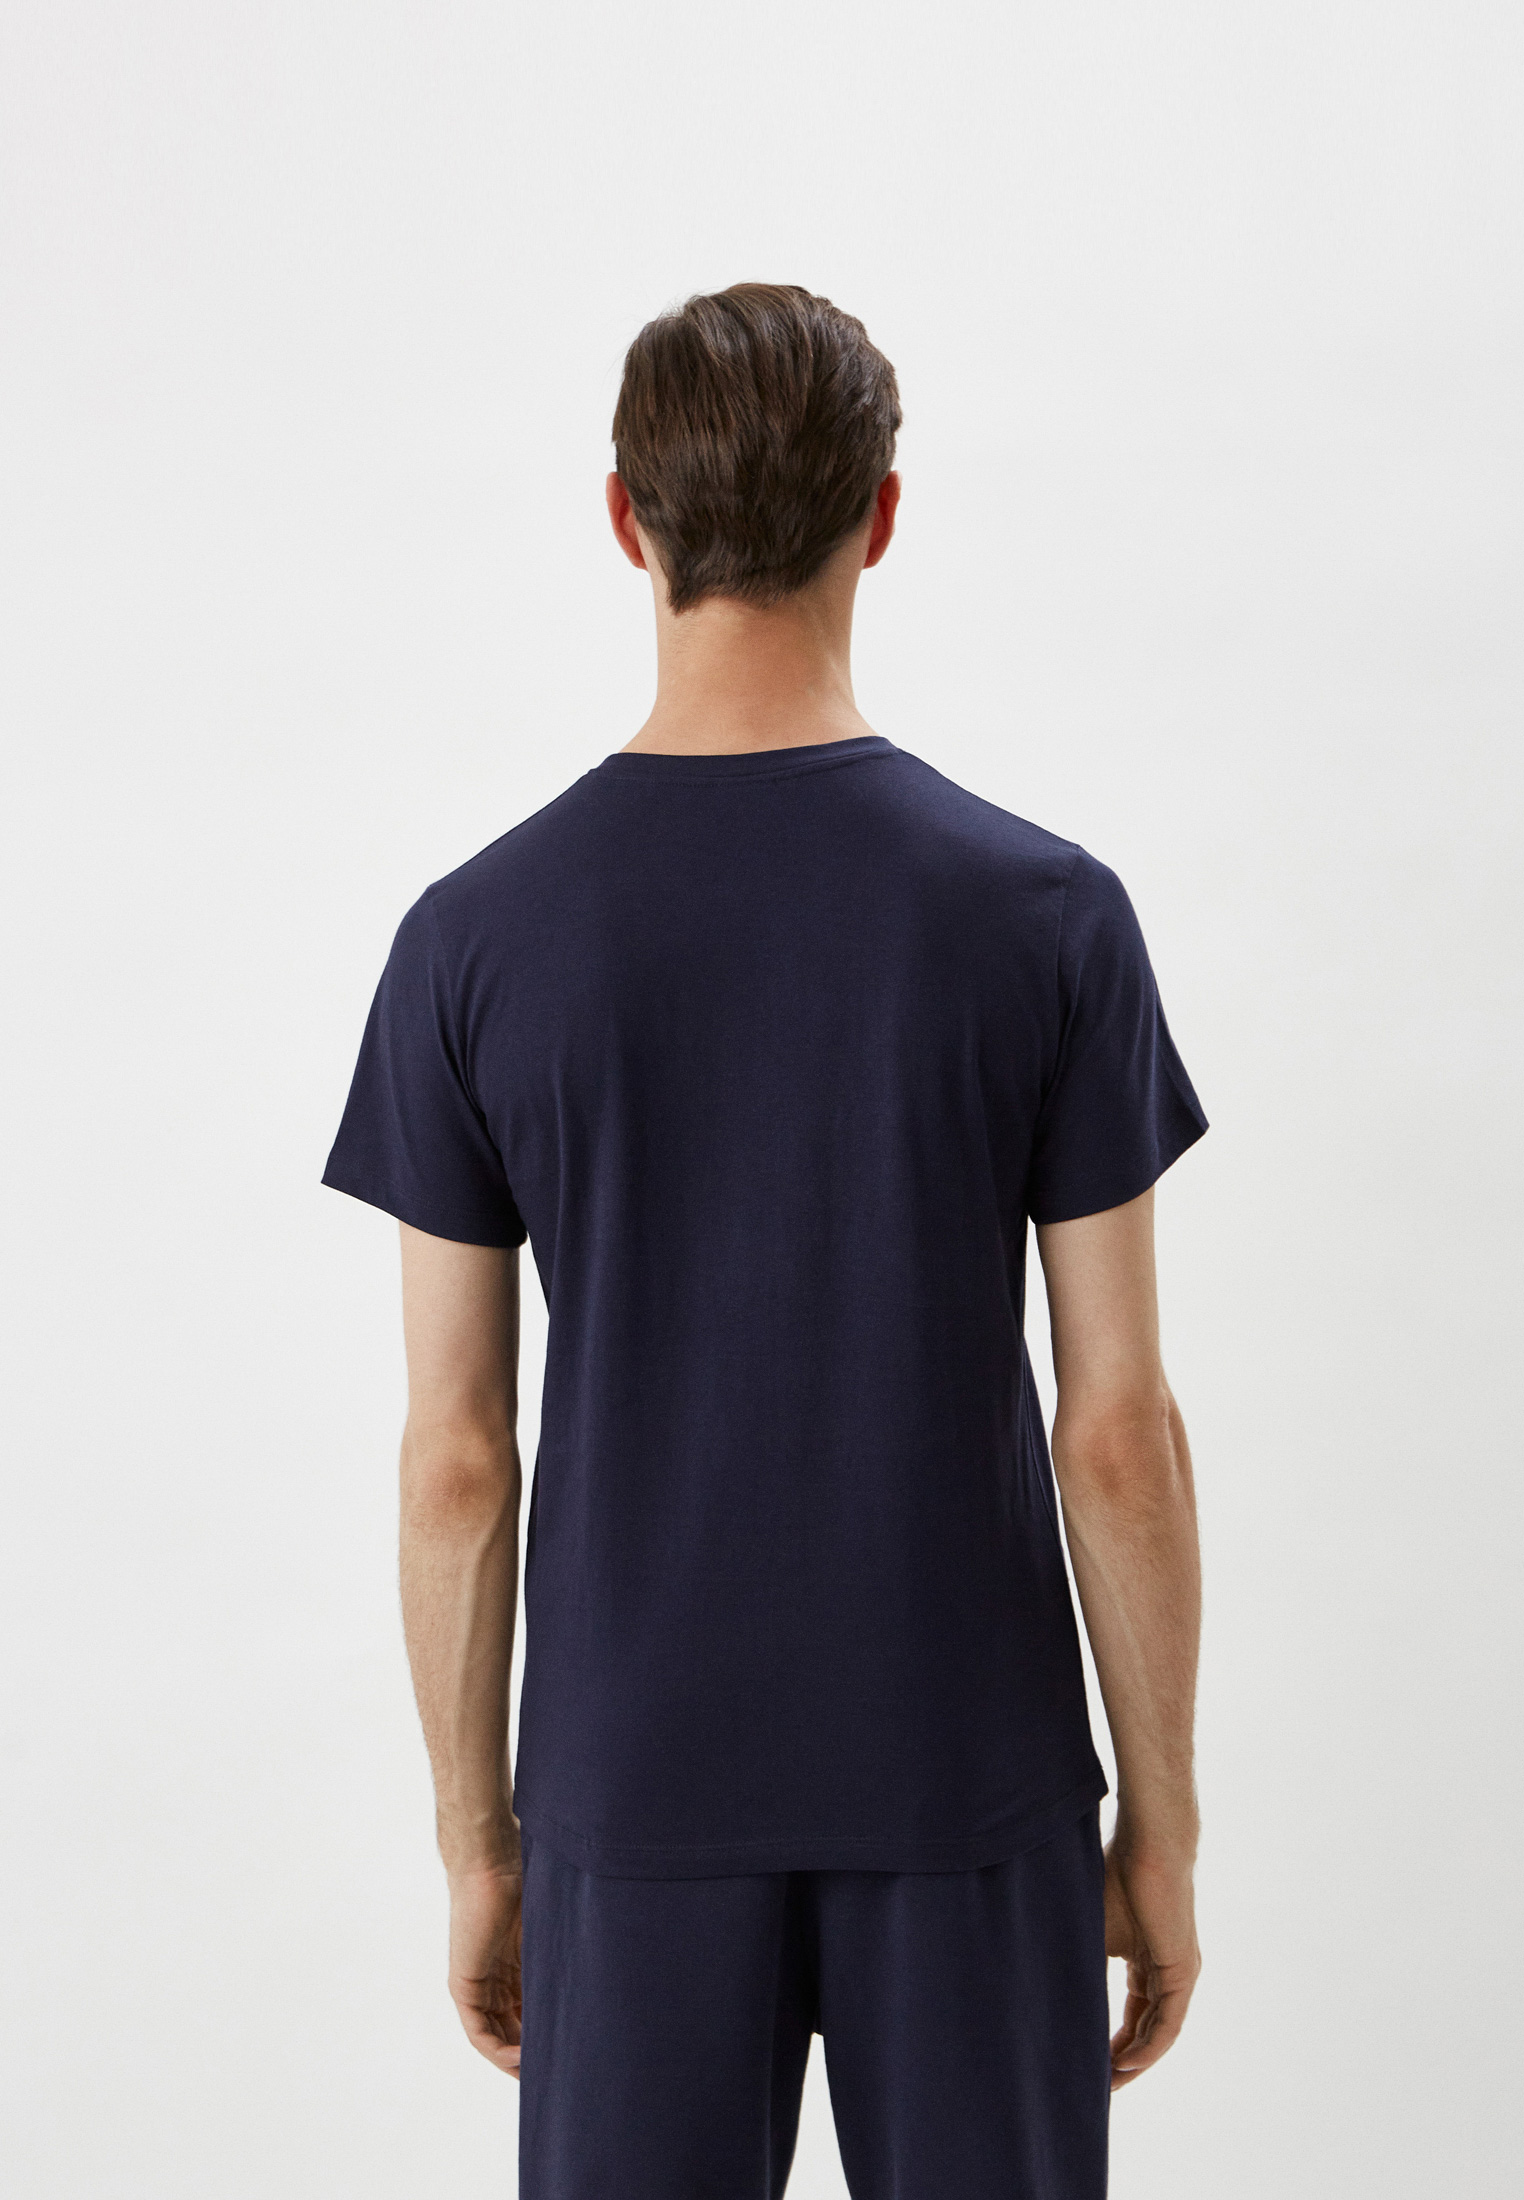 Мужская футболка Baldinini (Балдинини) M21: изображение 2